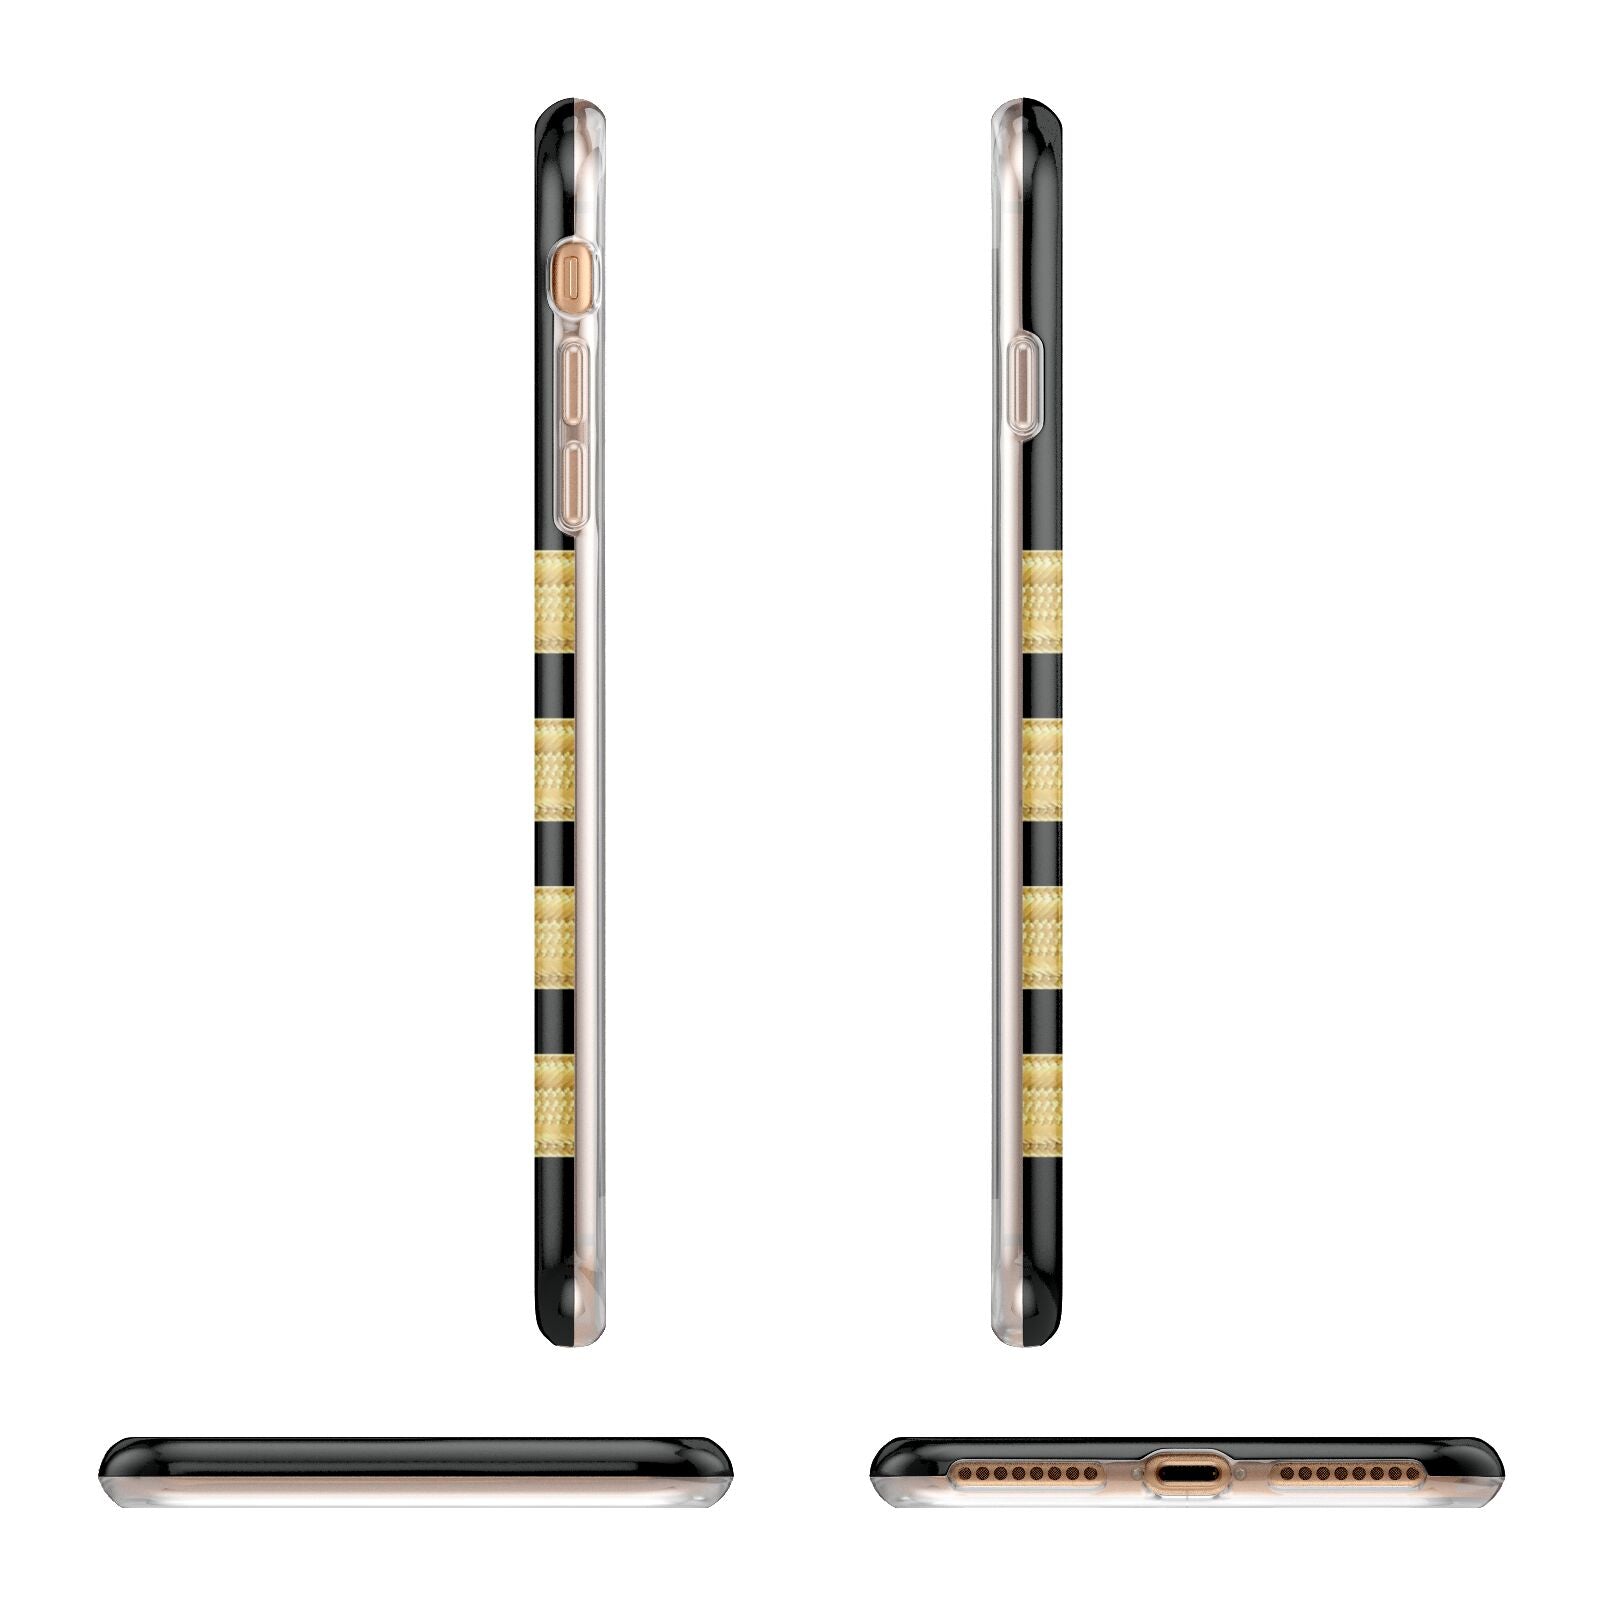 Black Gold Pilot Stripes Apple iPhone 7 8 Plus 3D Wrap Tough Case Alternative Image Angles